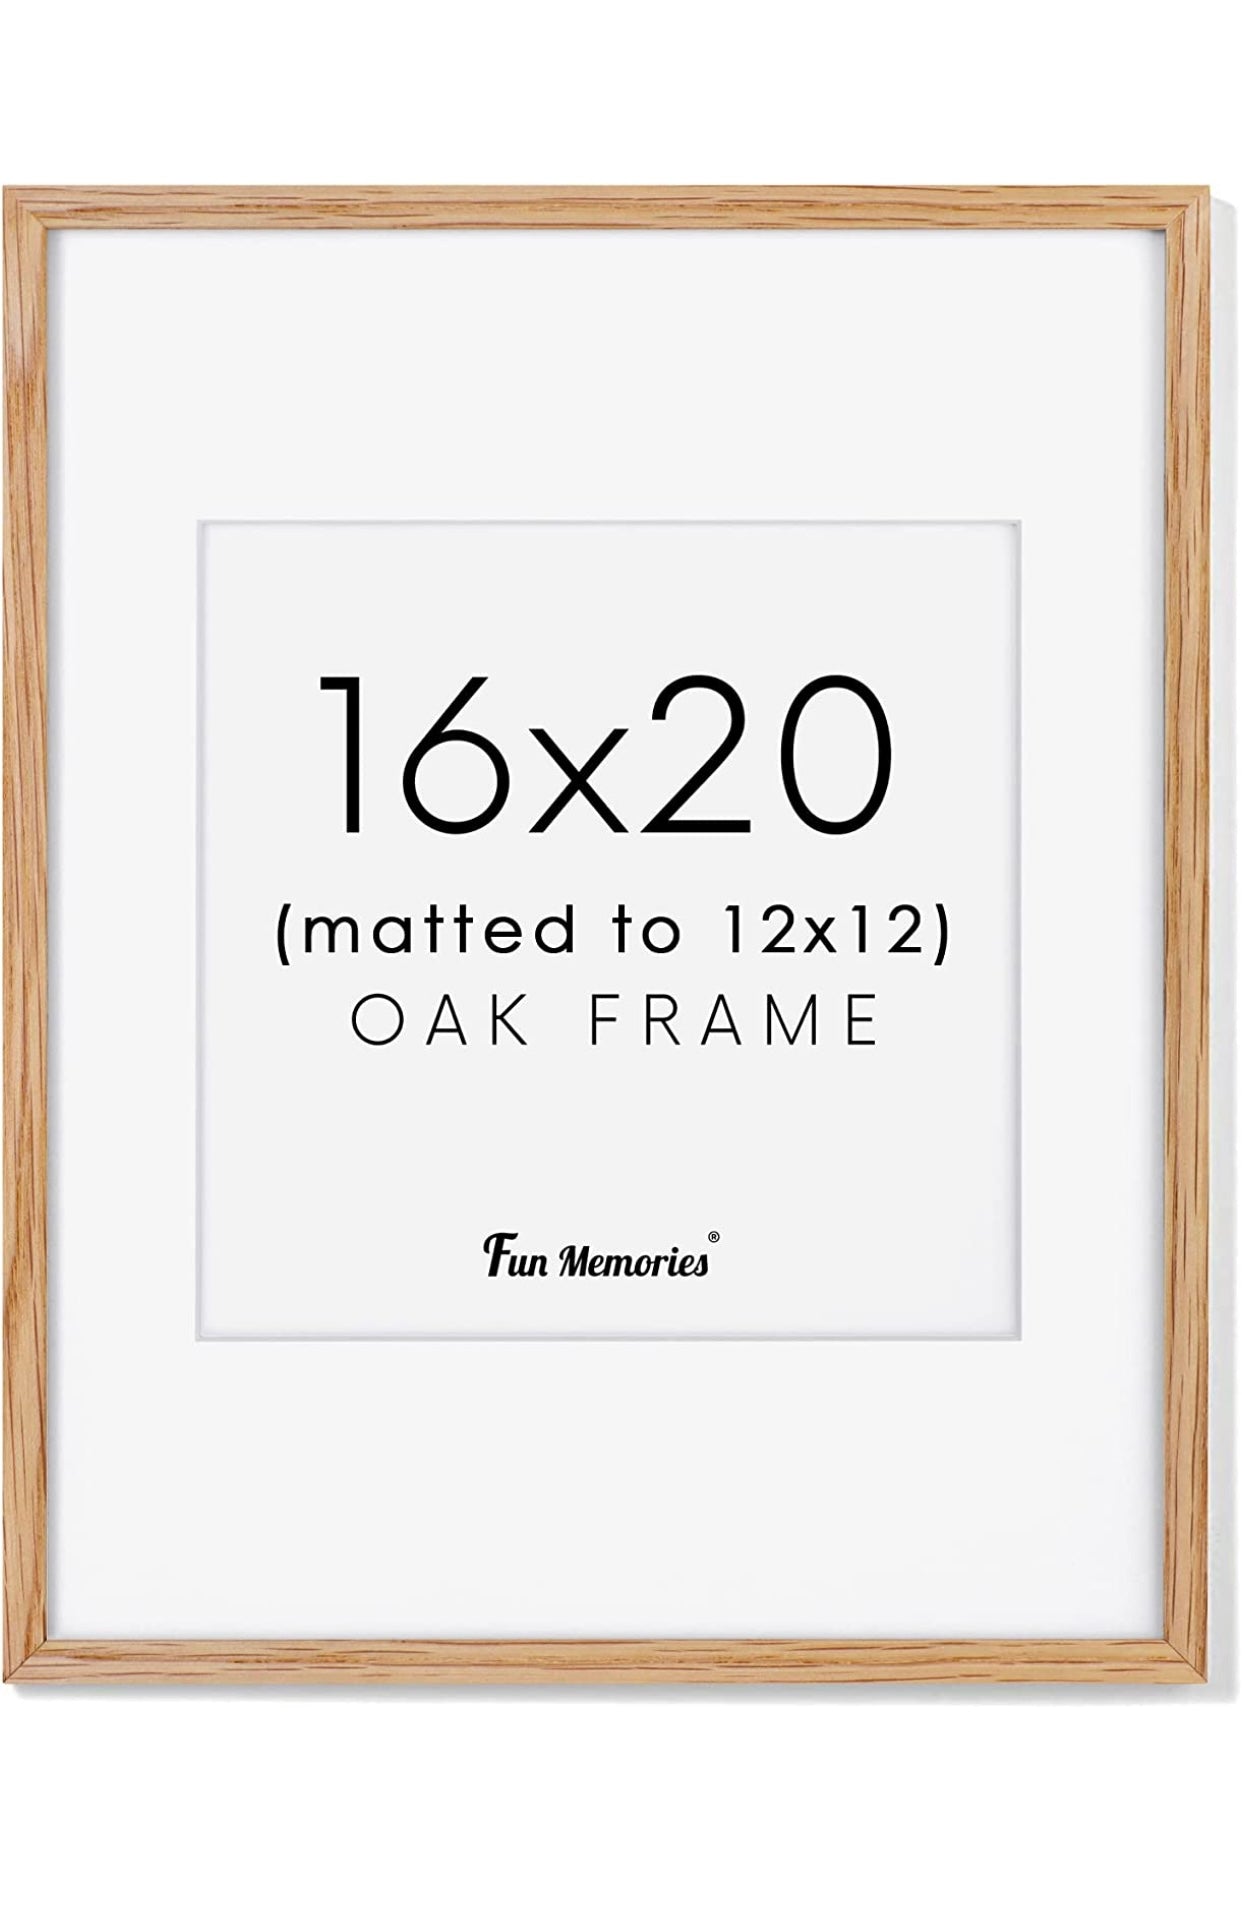 The 16x20 Frame